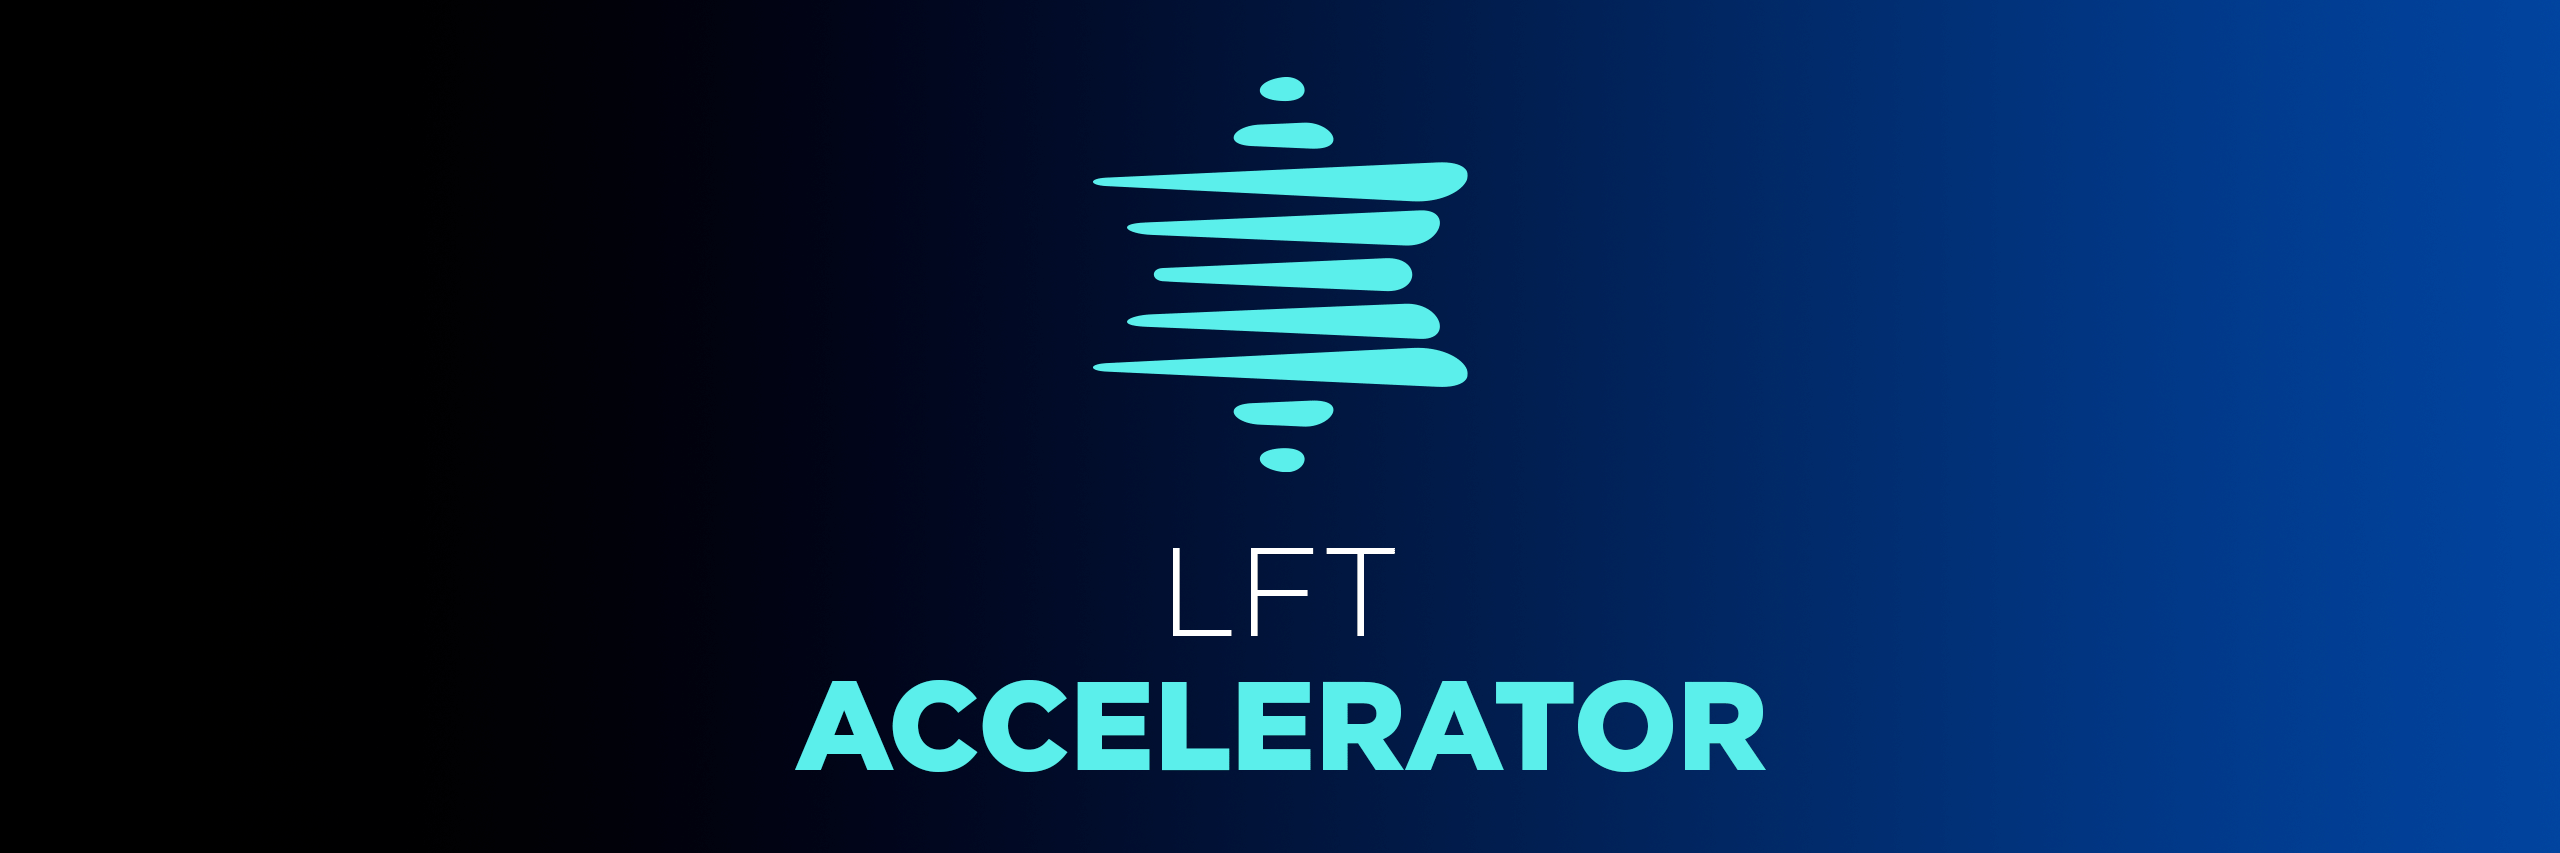 LFT Accelerator